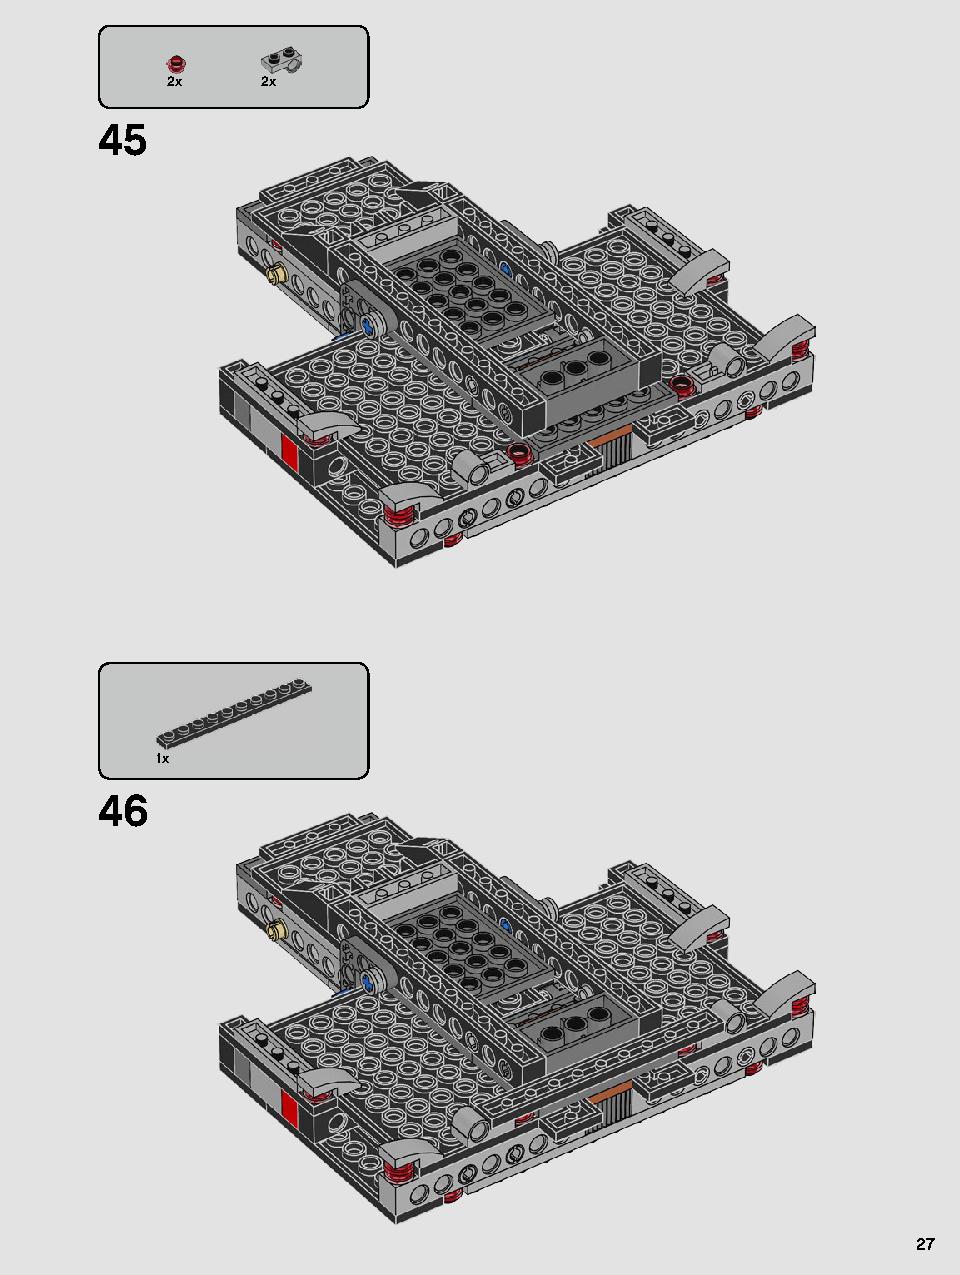 스타워즈 카일로 렌의 셔틀™ 75256 레고 세트 제품정보 레고 조립설명서 27 page